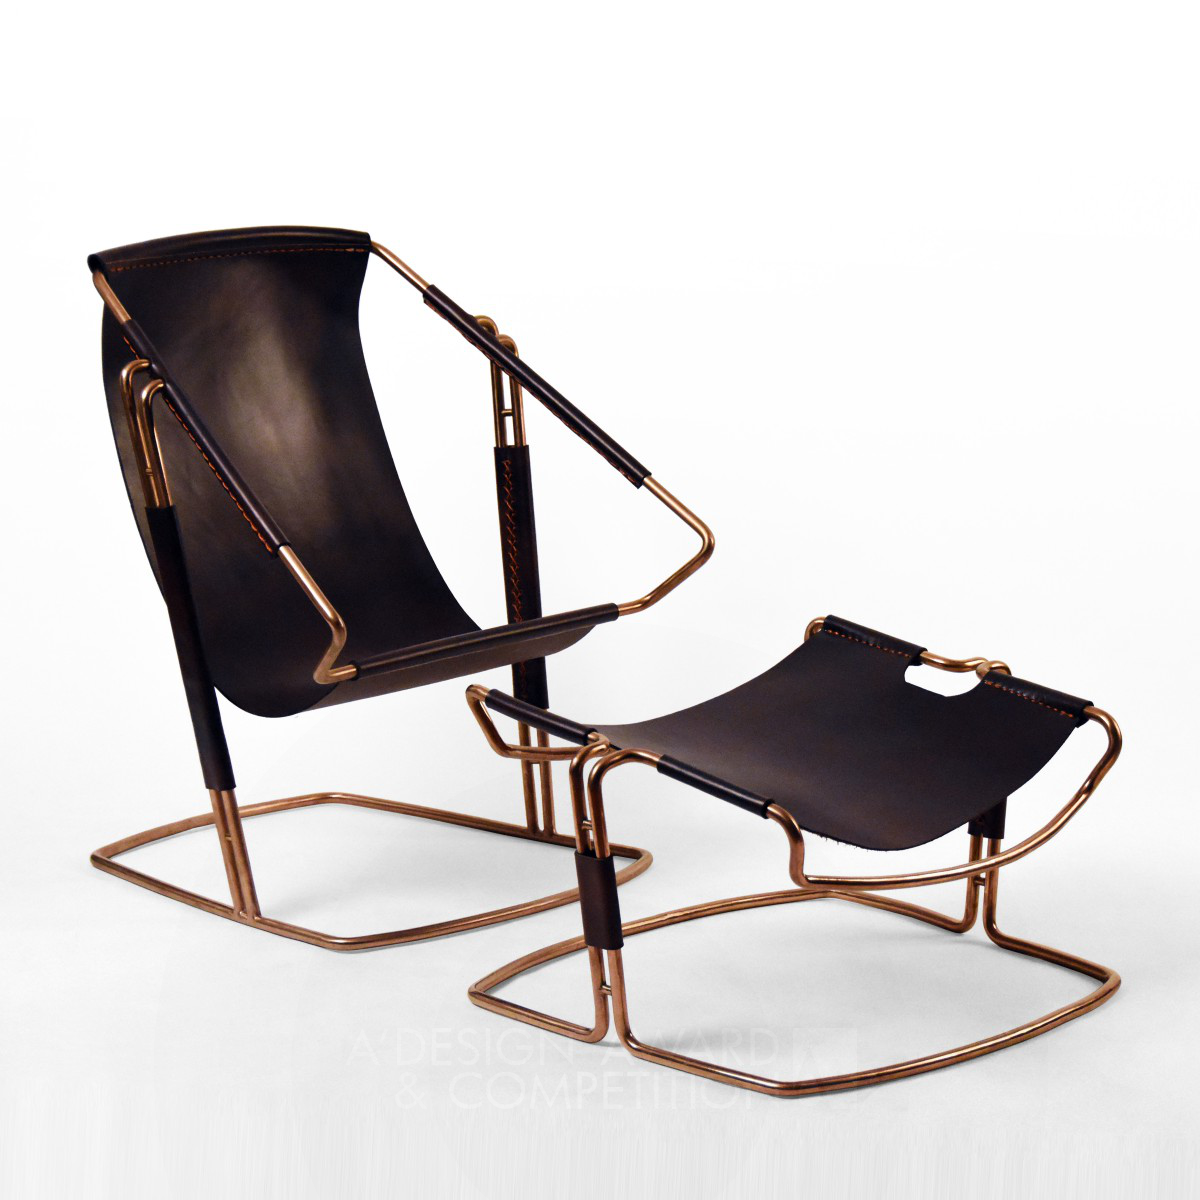 Qiyi Leisure Chair Novel and Comfortable Chair by Wei Jingye, Zhu Zhenbang and Wang Da Bronze Furniture Design Award Winner 2019 